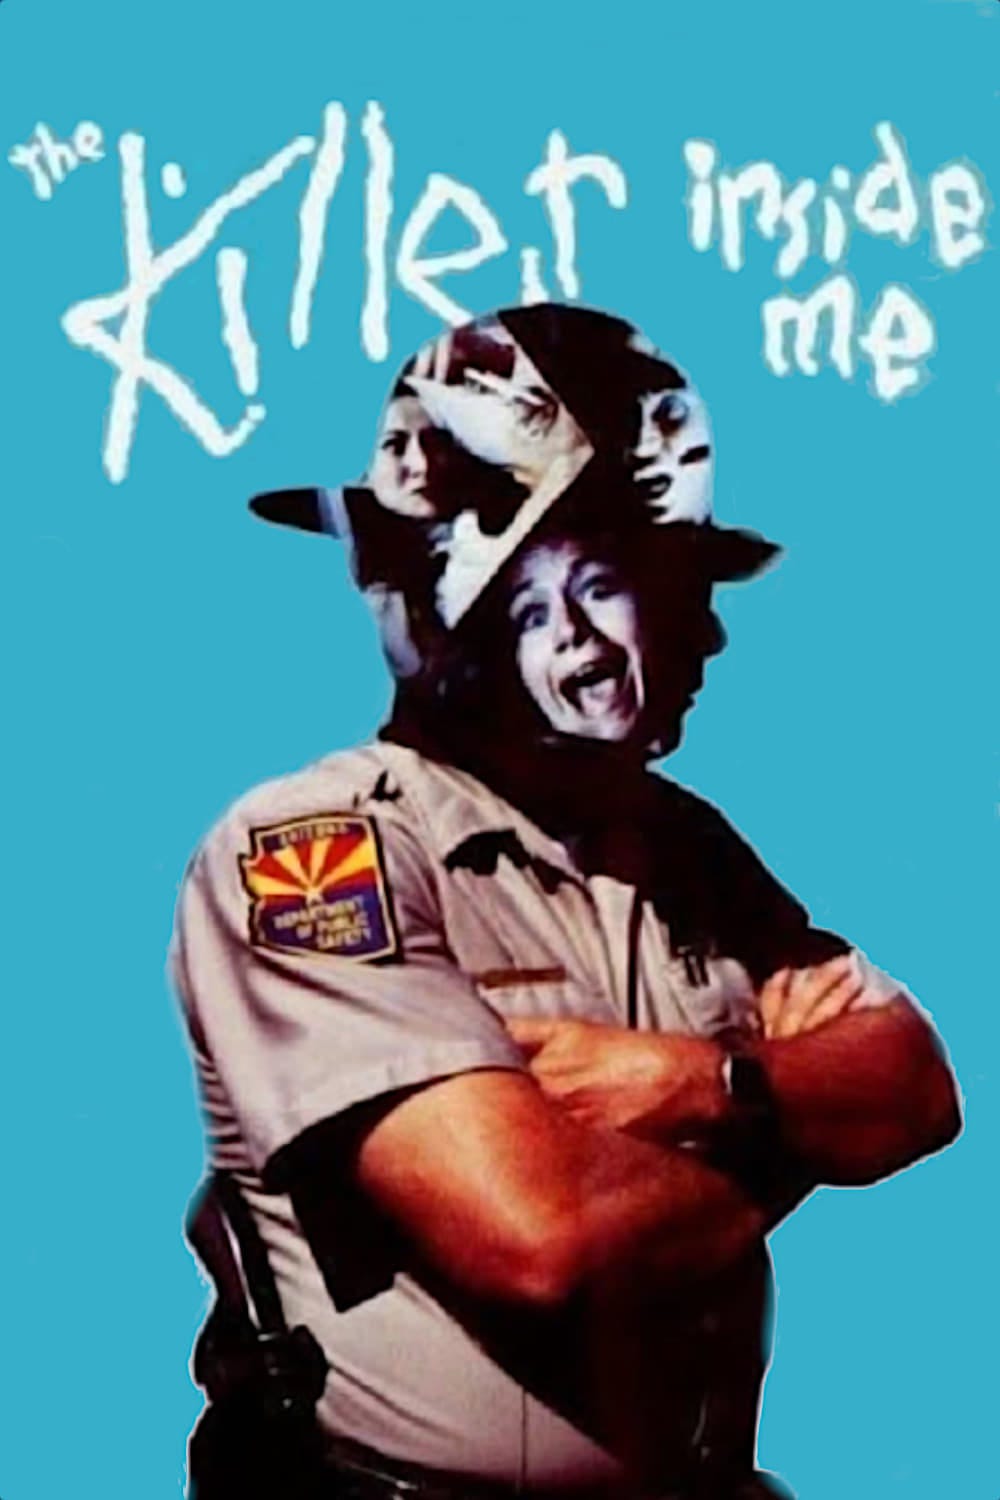 The Killer Inside Me (1976) | Poster